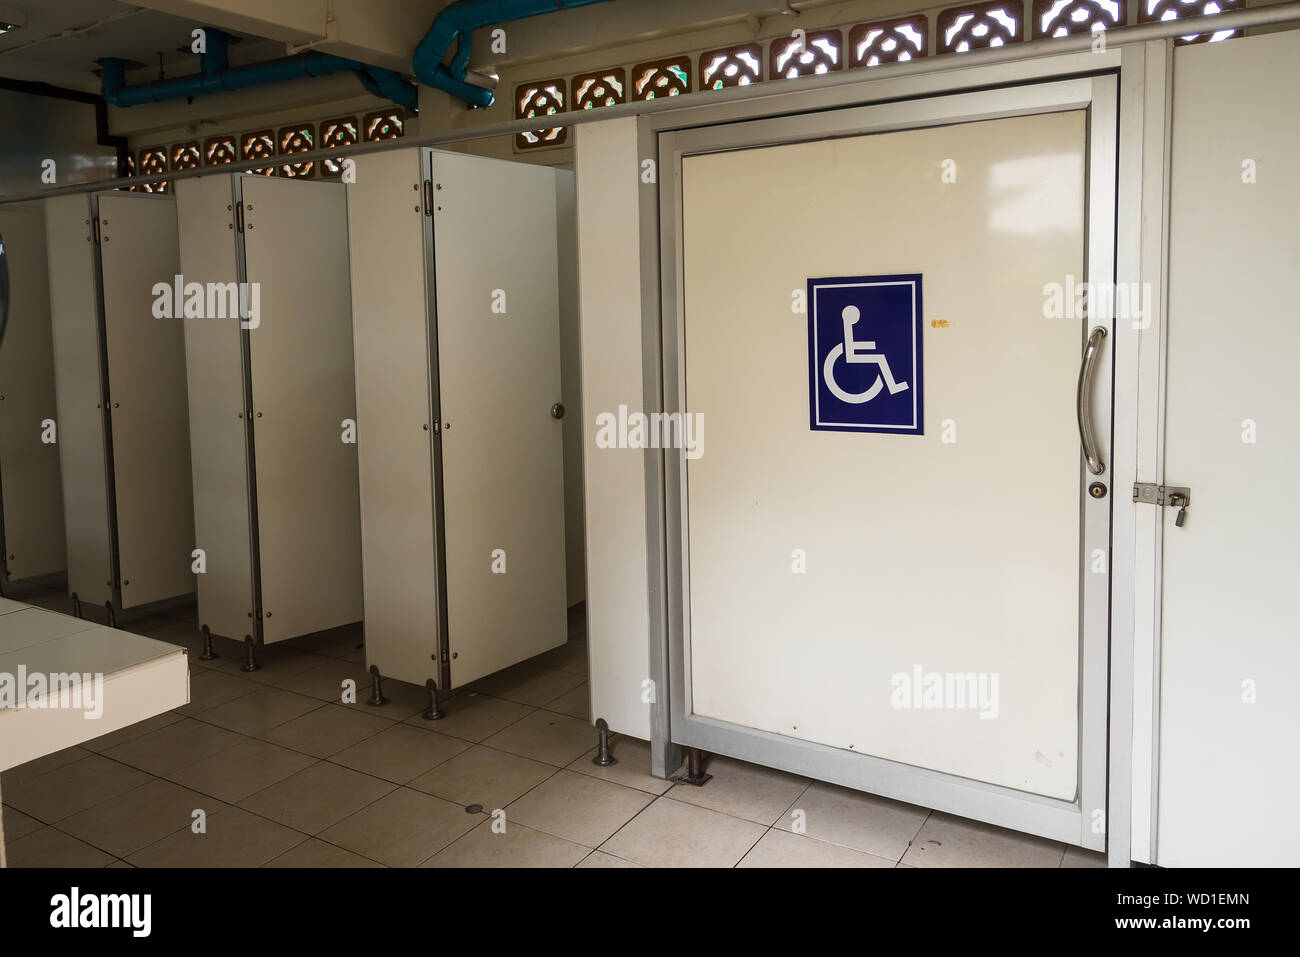 Señal de discapacitados en puerta en baño público Fotografía de stock -  Alamy